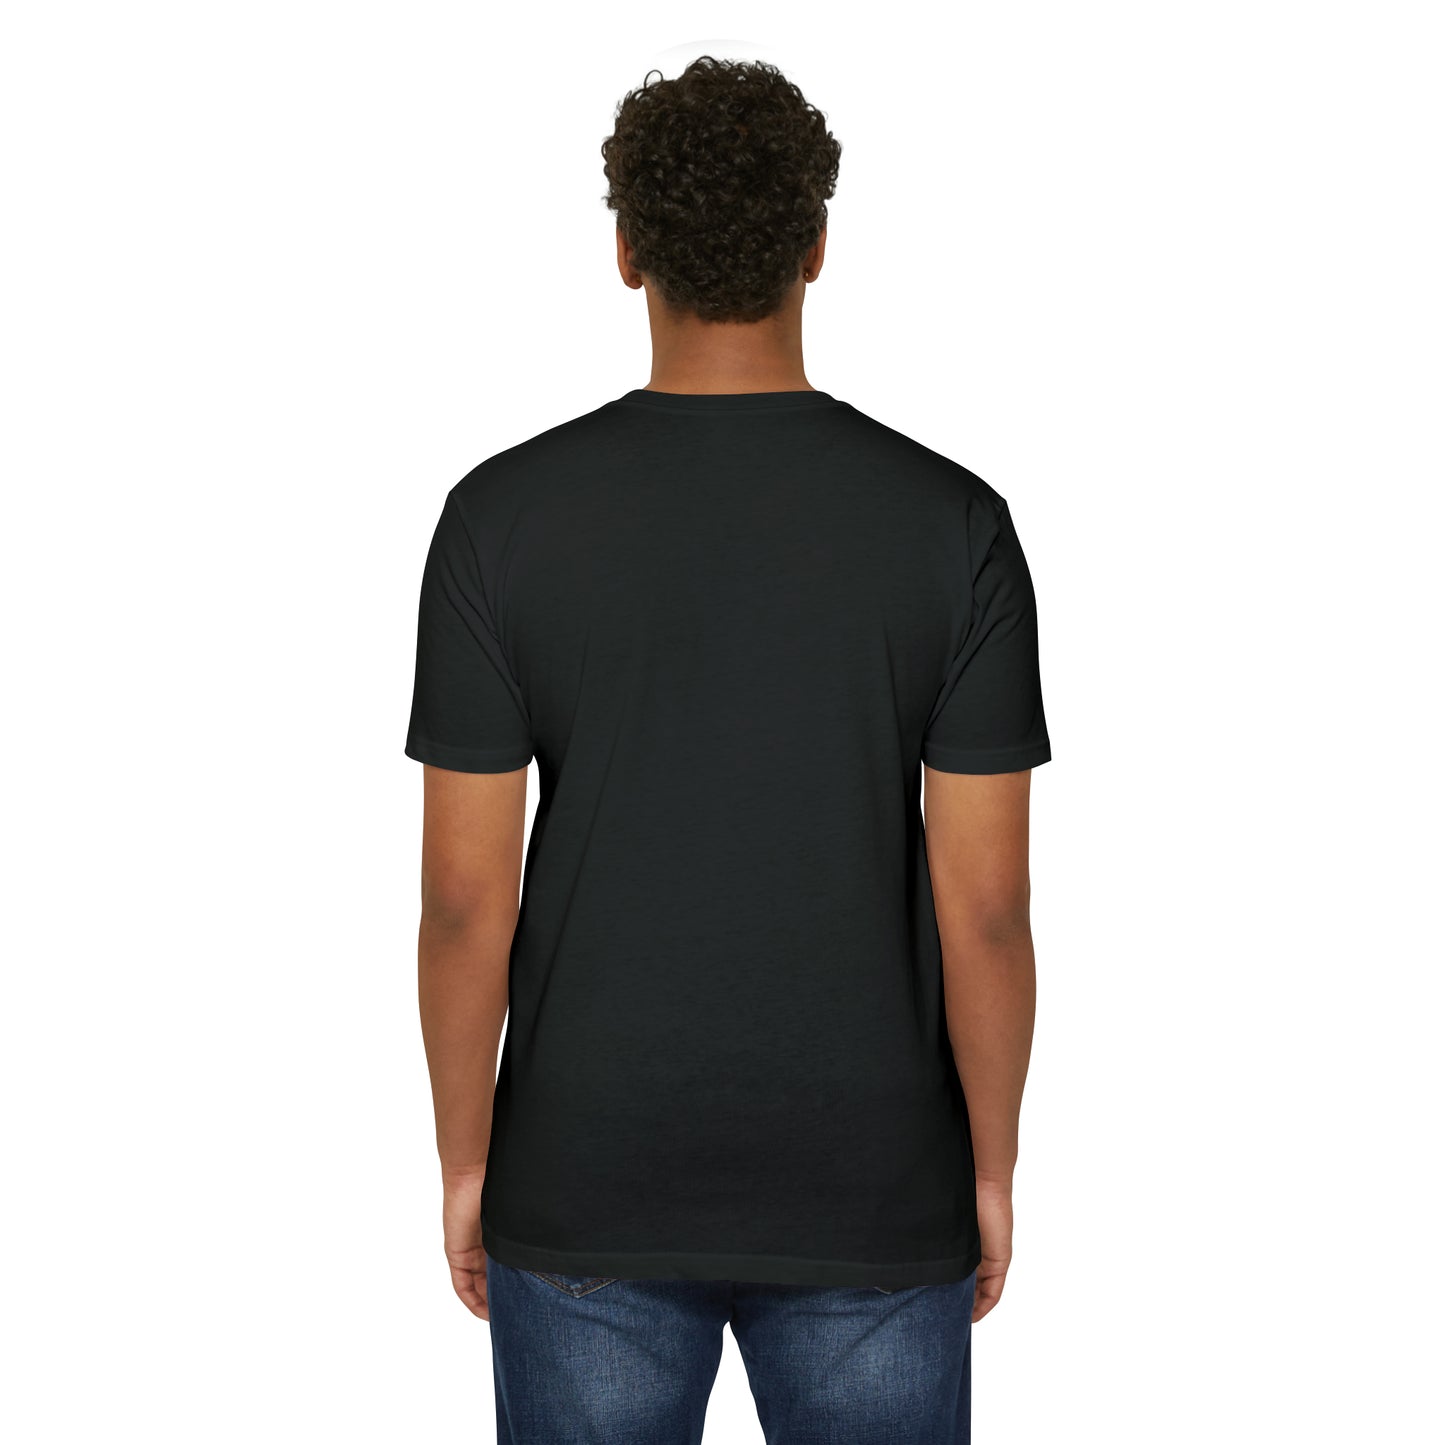 DQU NEXT LEVEL Unisex CVC Jersey T-shirt